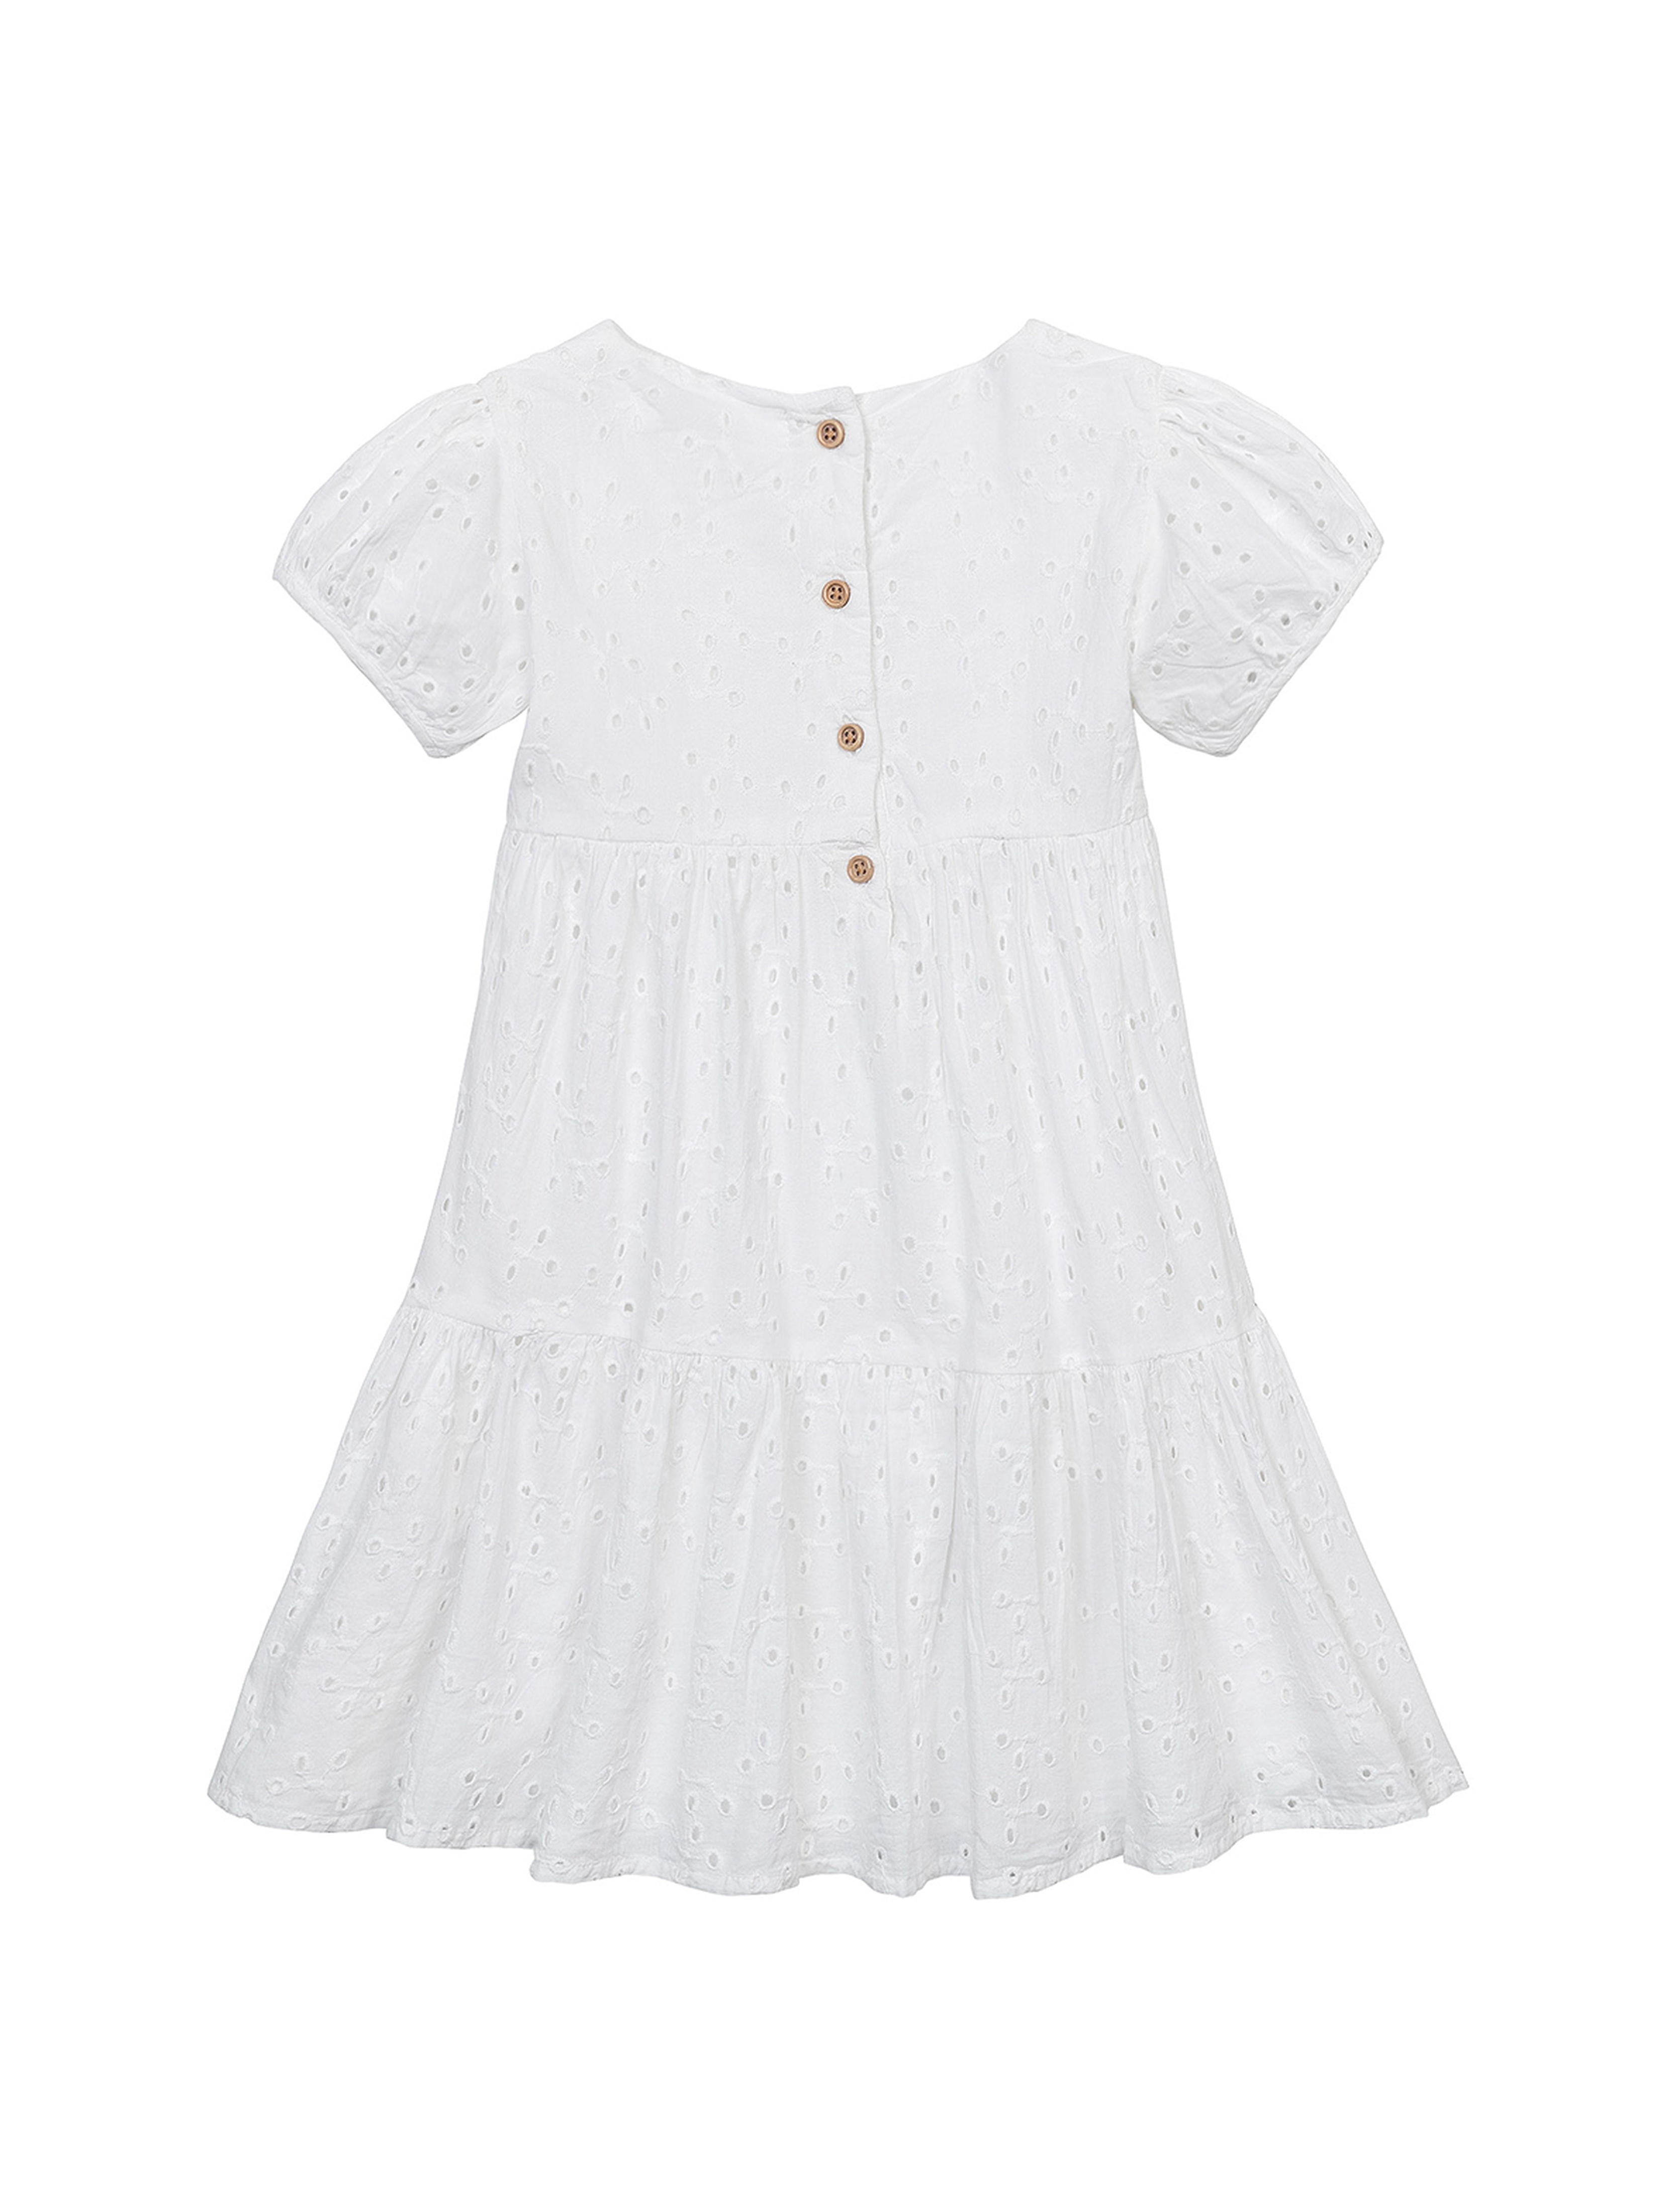 Biała zwiewna sukienka z bawełny dla dziewczynki